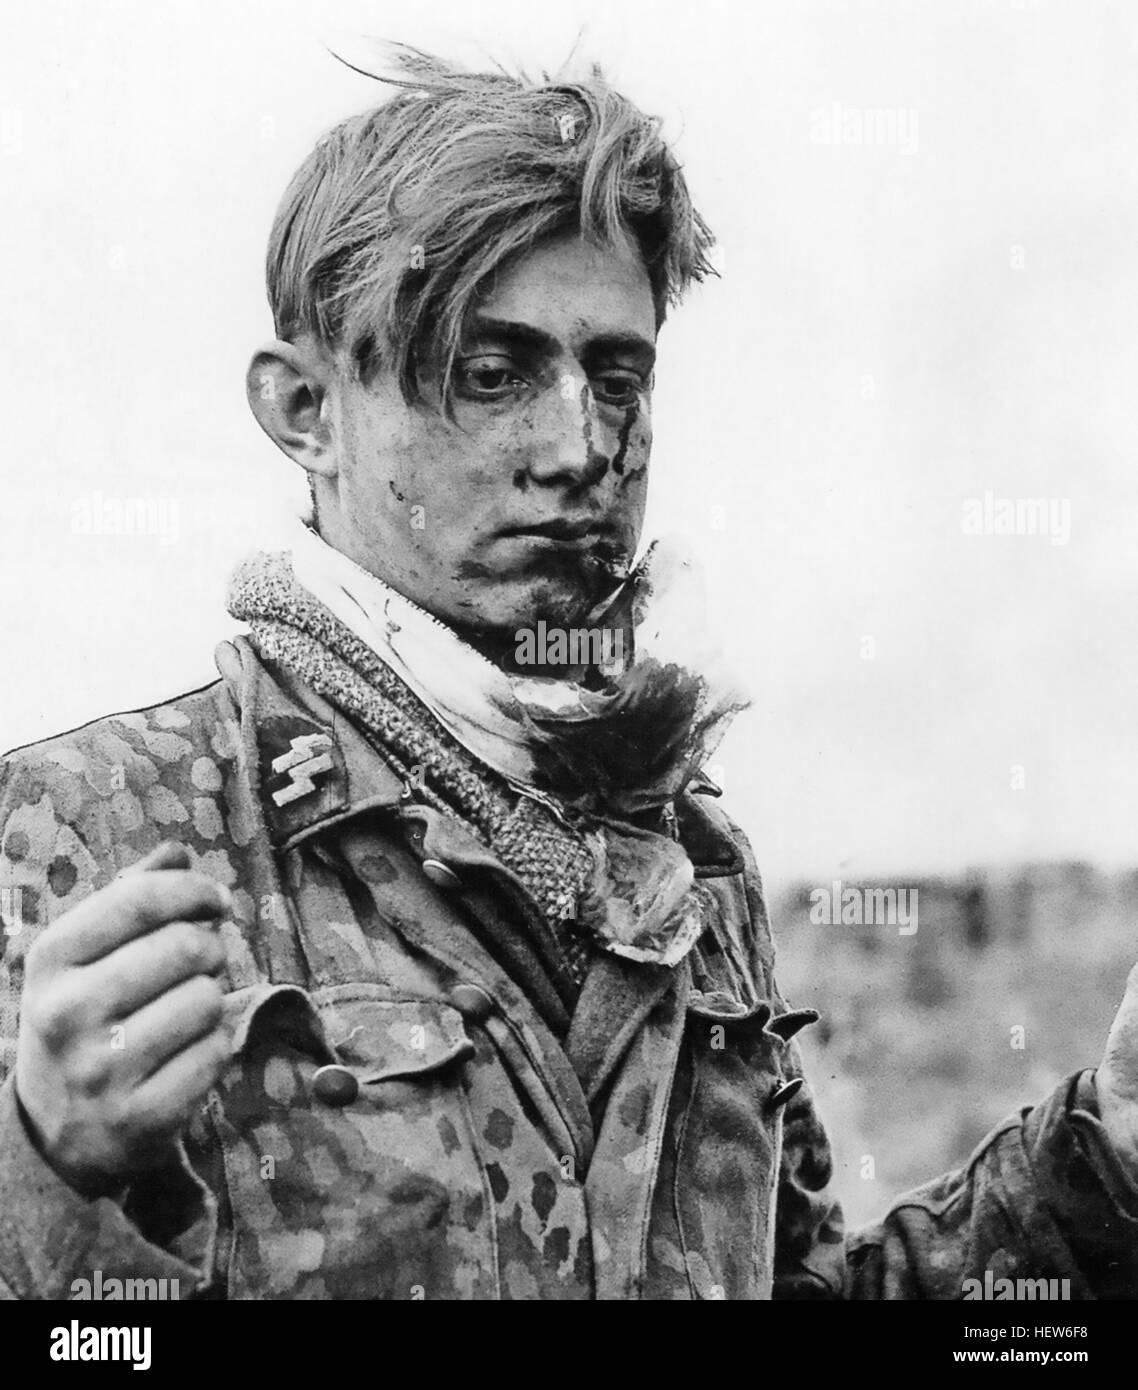 GERMAN waffen SS prigioniero di età compresa tra i 18 catturato dai soldati americani durante la battaglia di Normandia. Foto: US Army Signal Corps Foto Stock